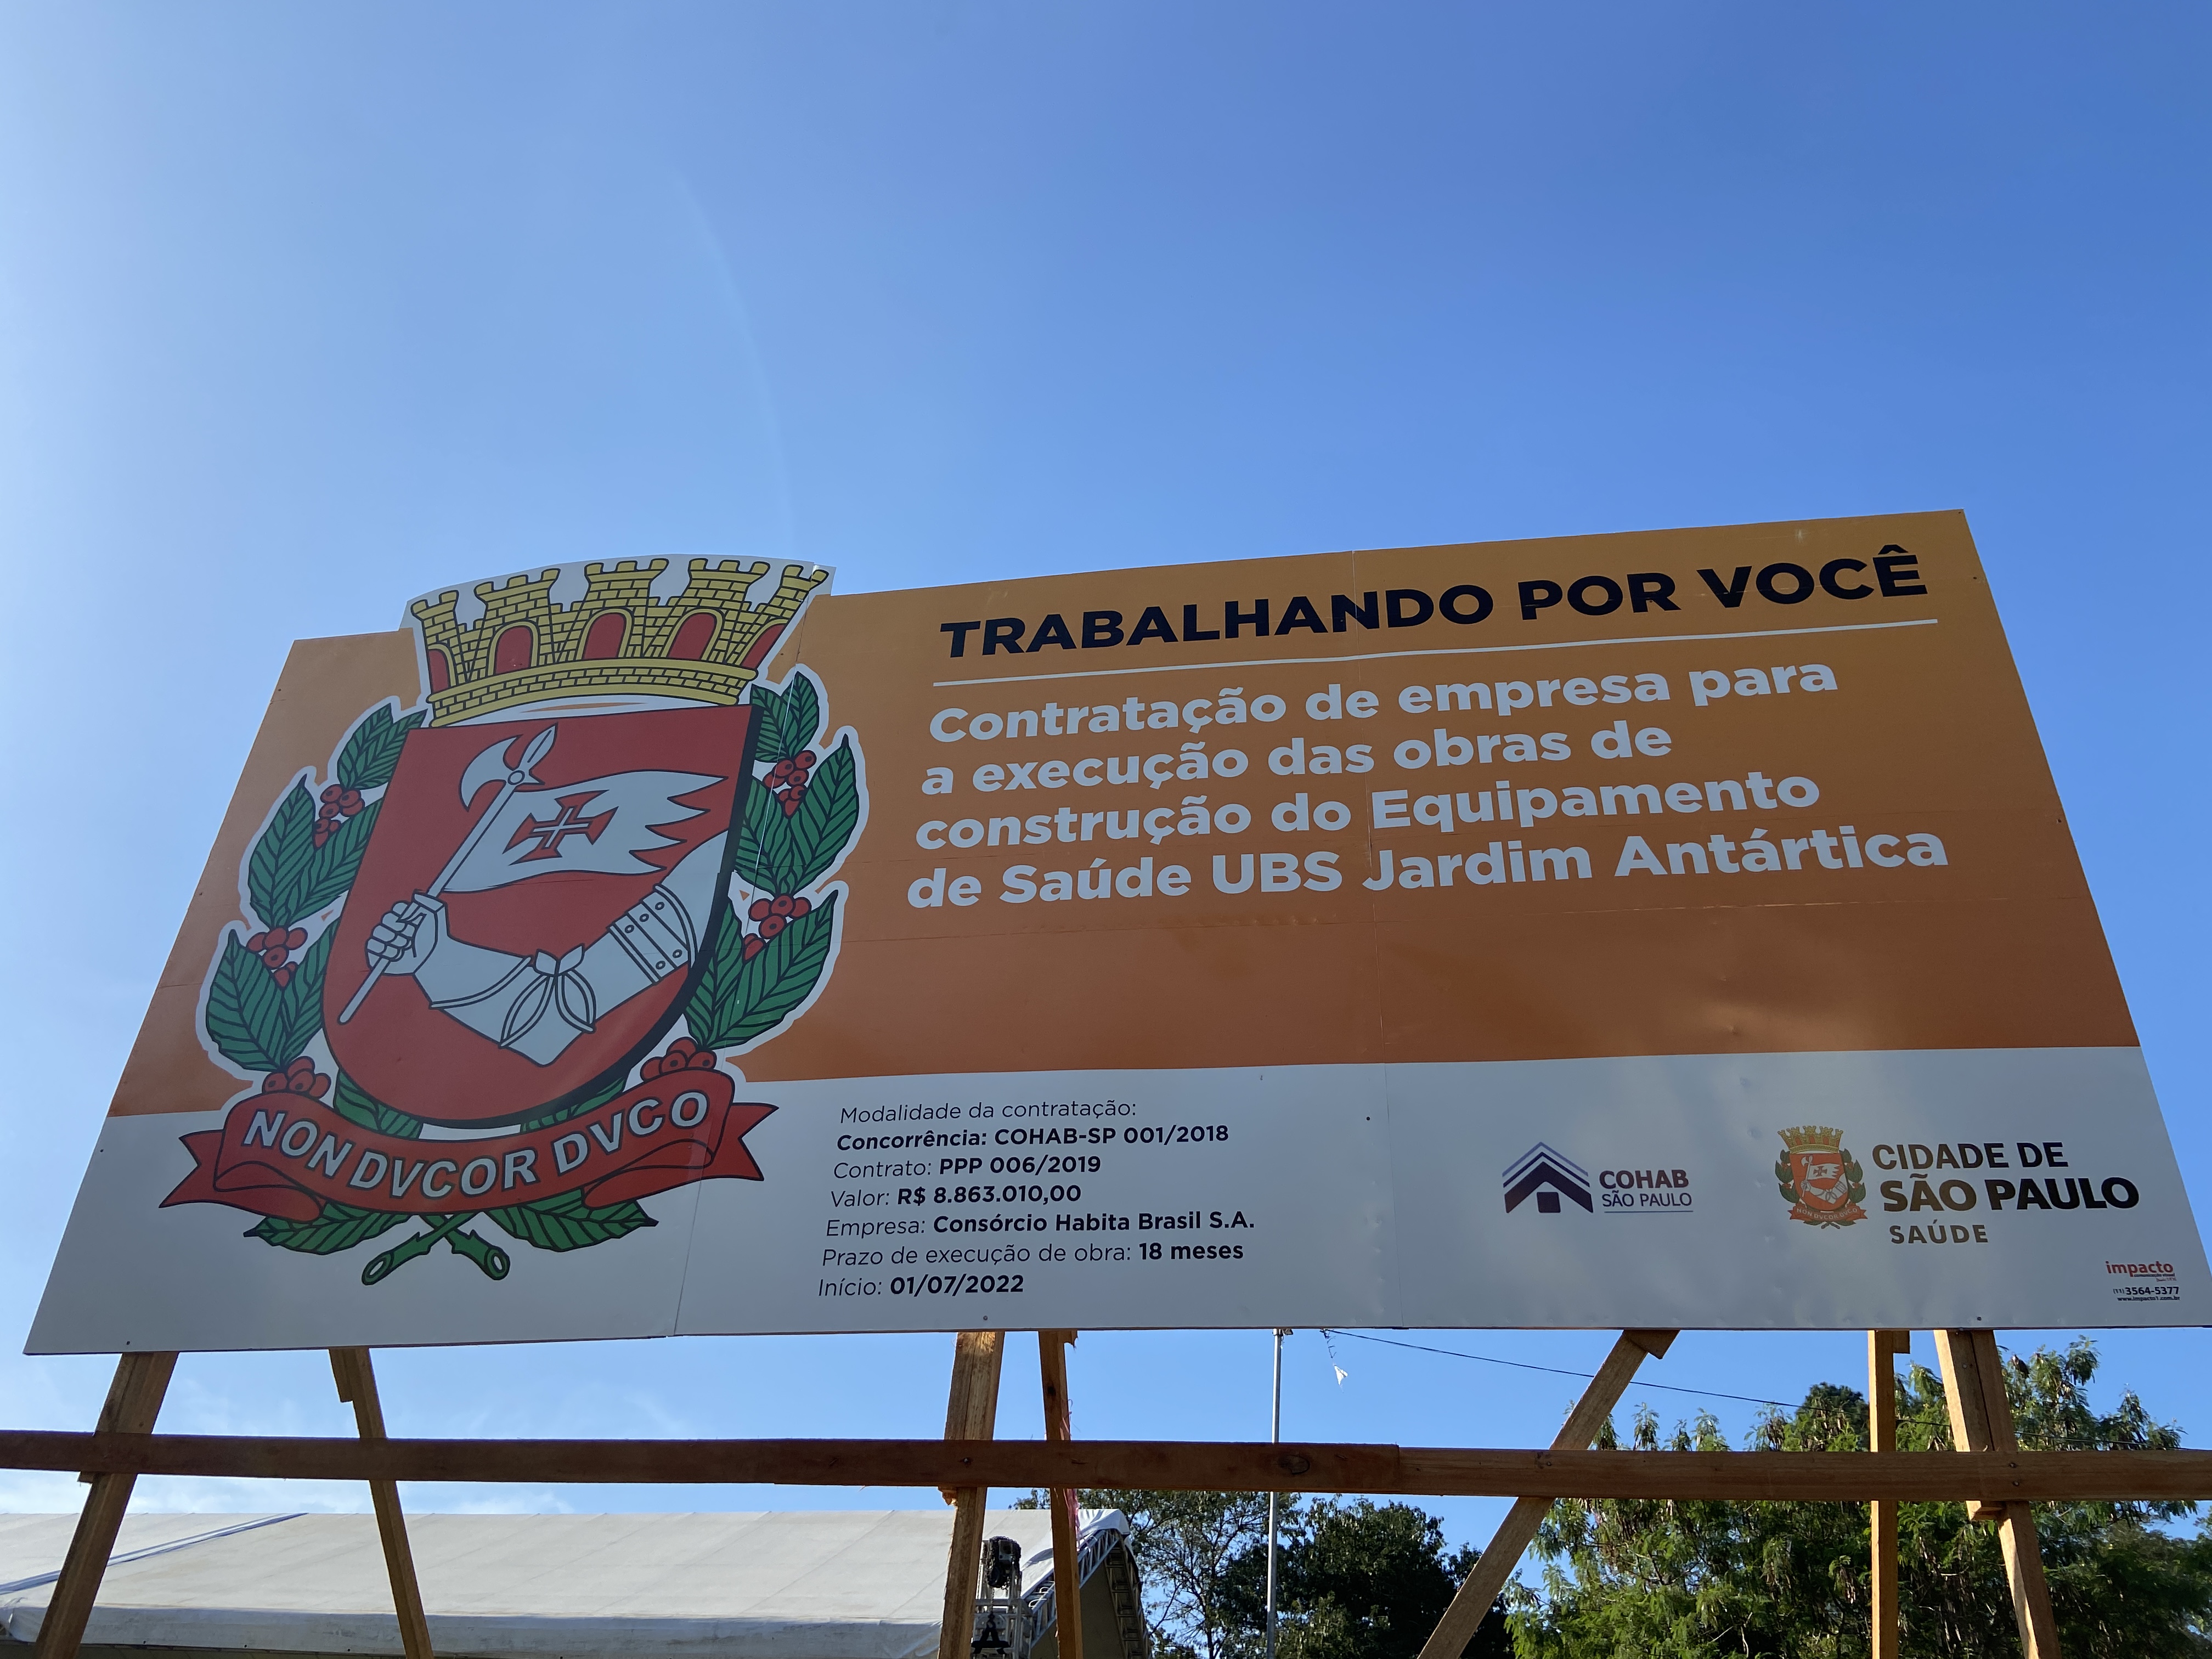 Plana laranja com os dizeres" Ordem de Início da construção da UBS Jardim Antártica".